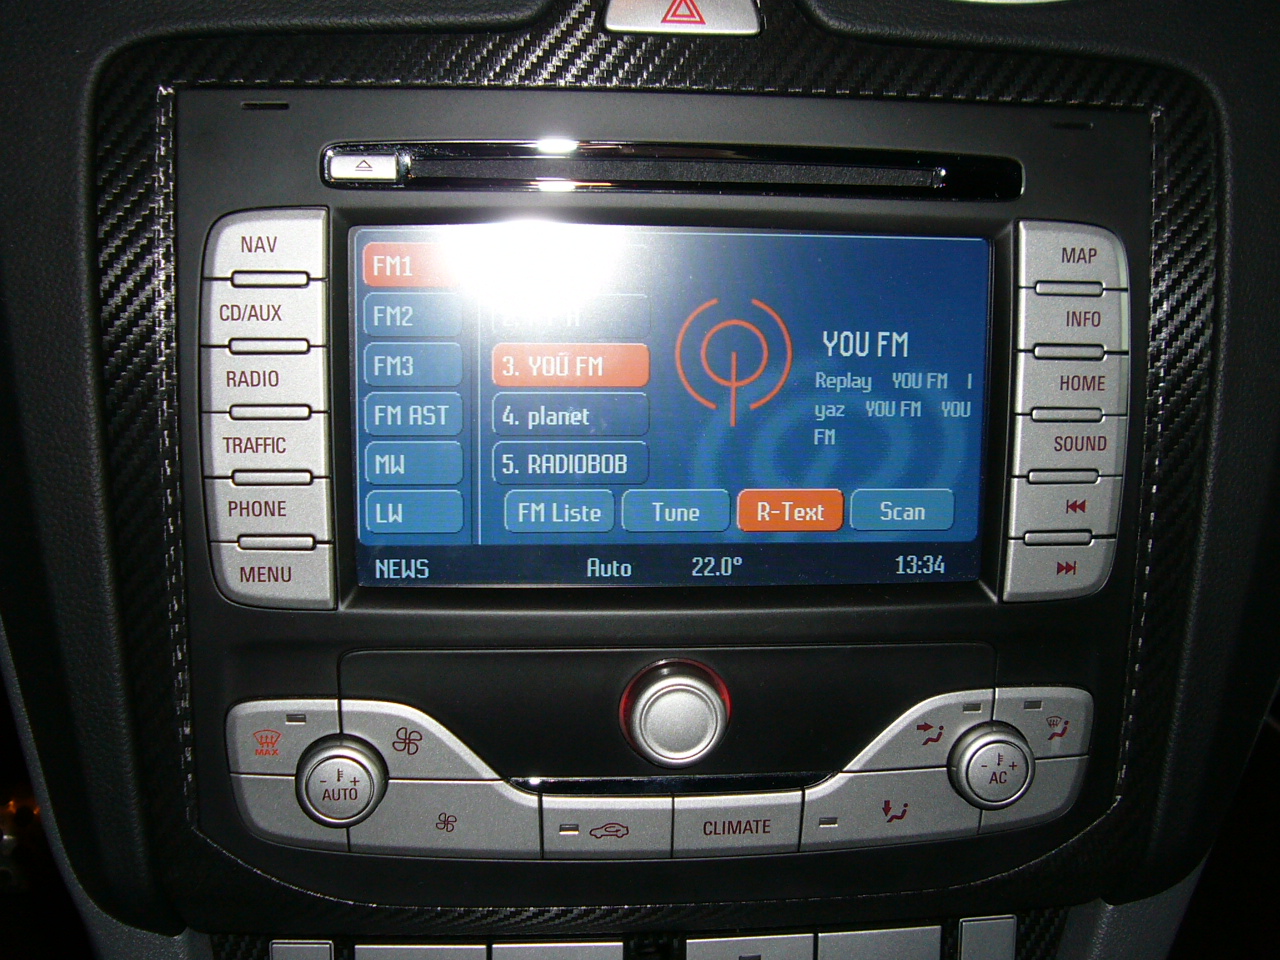 Ford blaupunkt nx touchscreen dvd navigation system #1